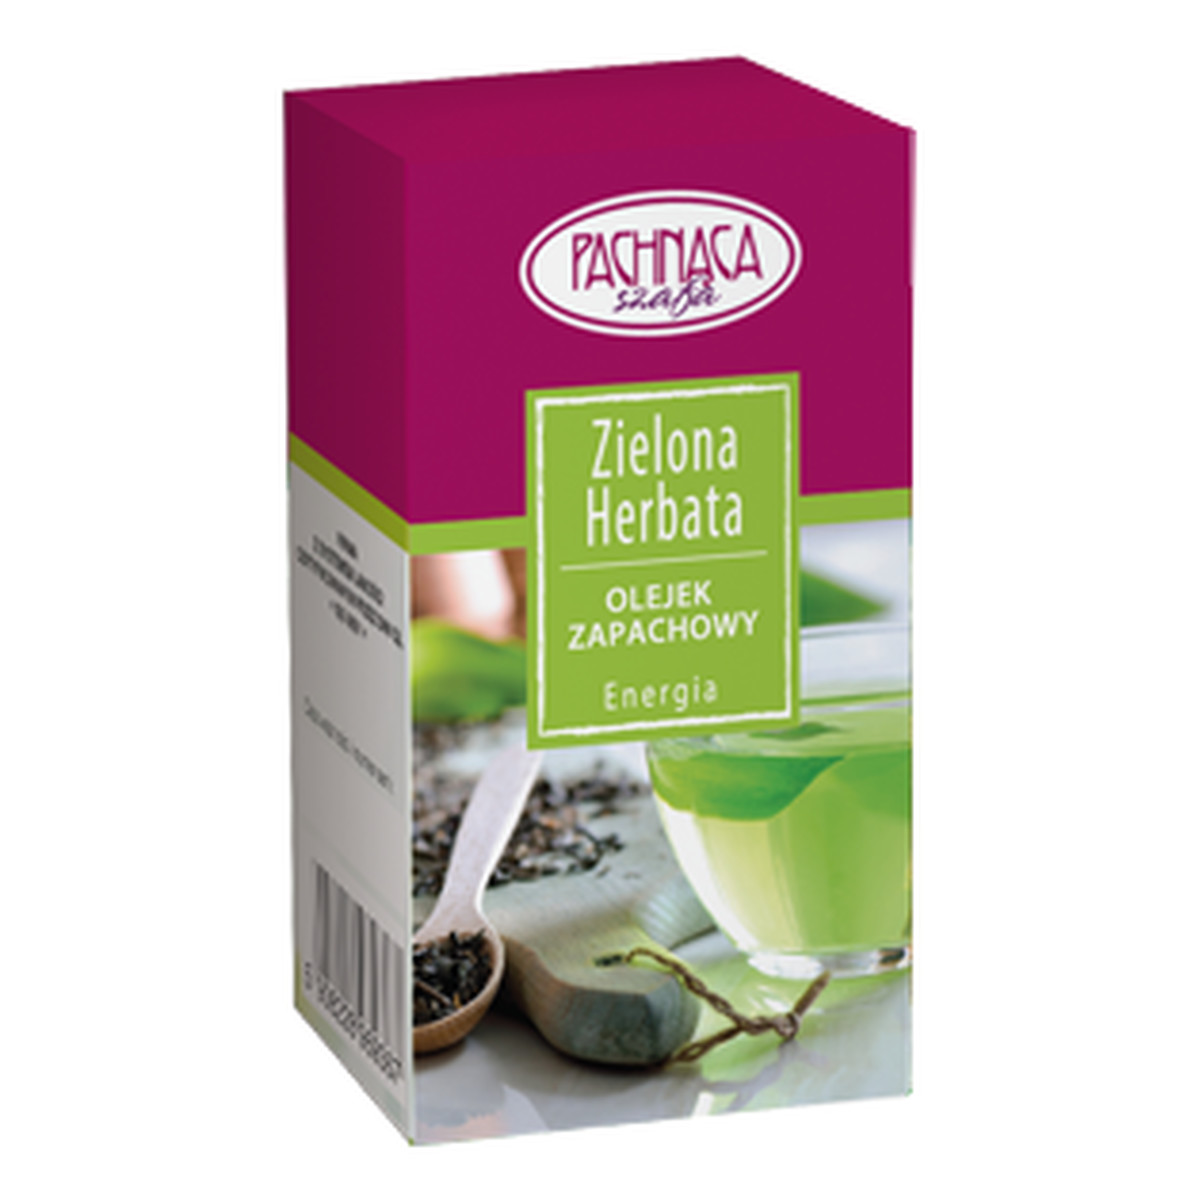 Pachnąca Szafa Energia Zielona Herbata Olejek Zapachowy 10ml